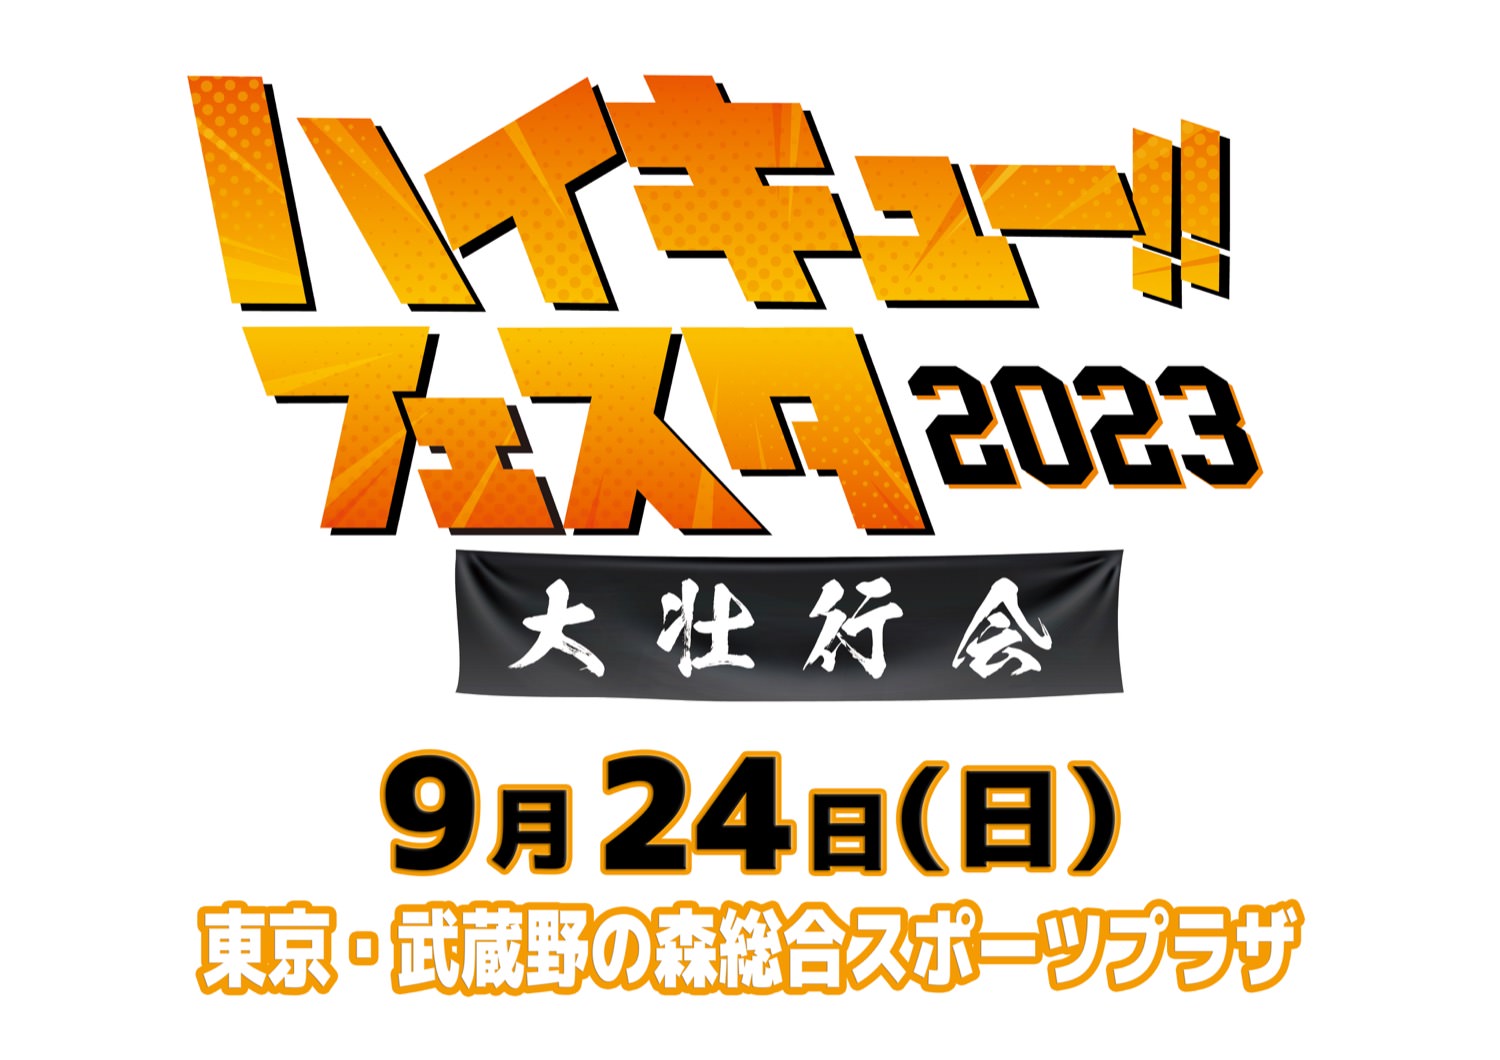 劇場版「ハイキュー!! FINAL」キックオフイベント 9月24日に開催!